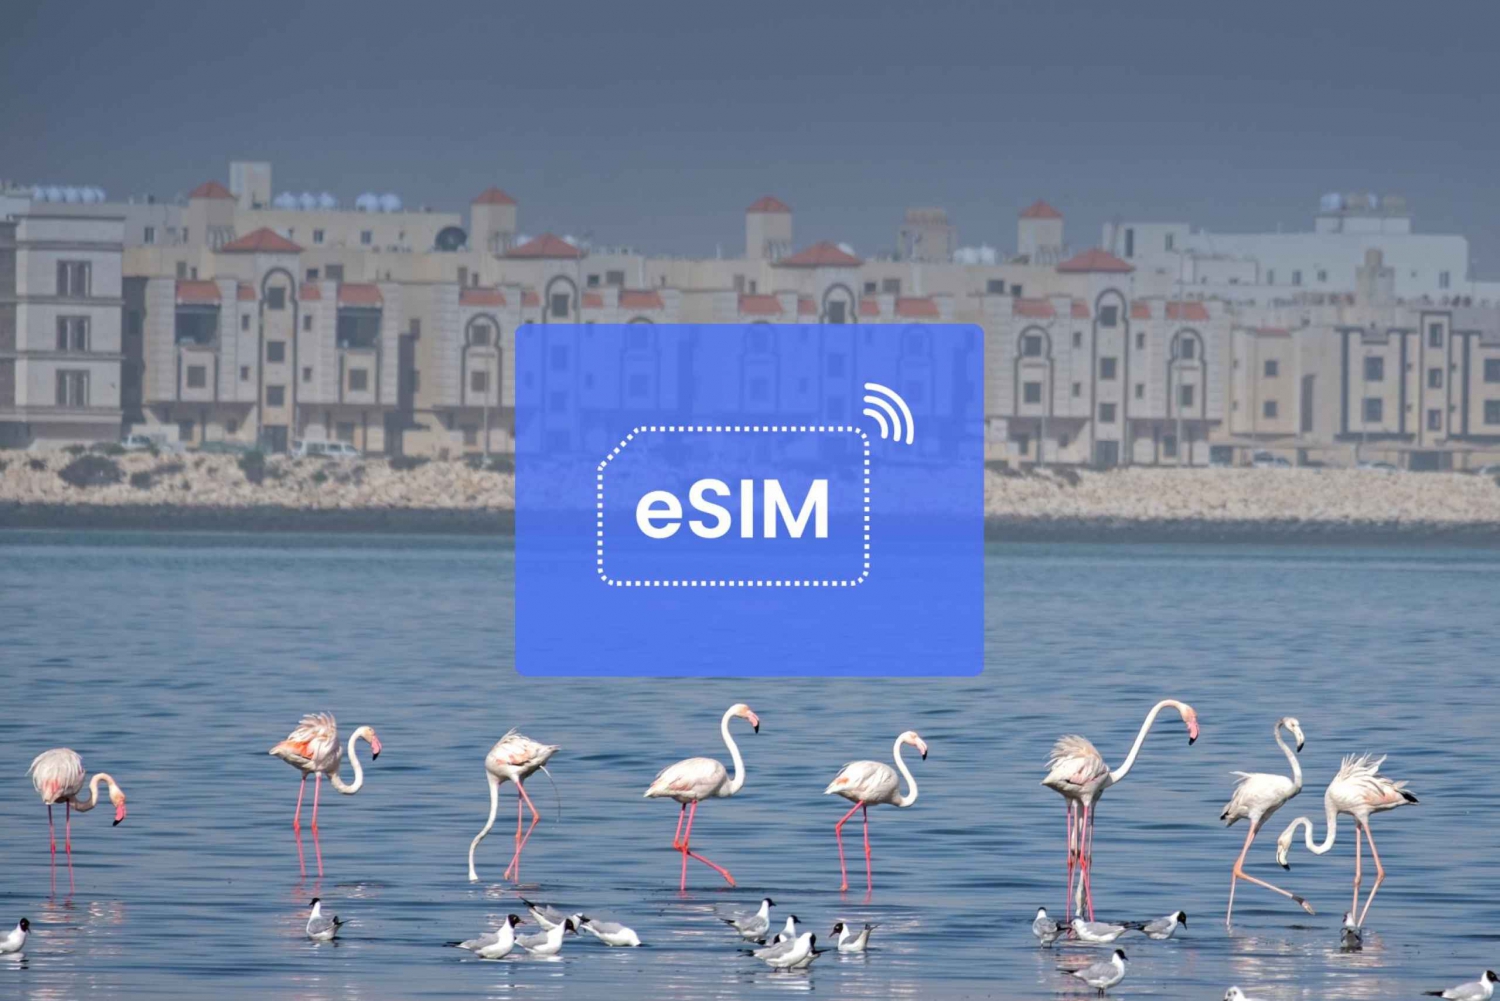 Dammam: plan mobilnej transmisji danych eSIM w Arabii Saudyjskiej i Azji